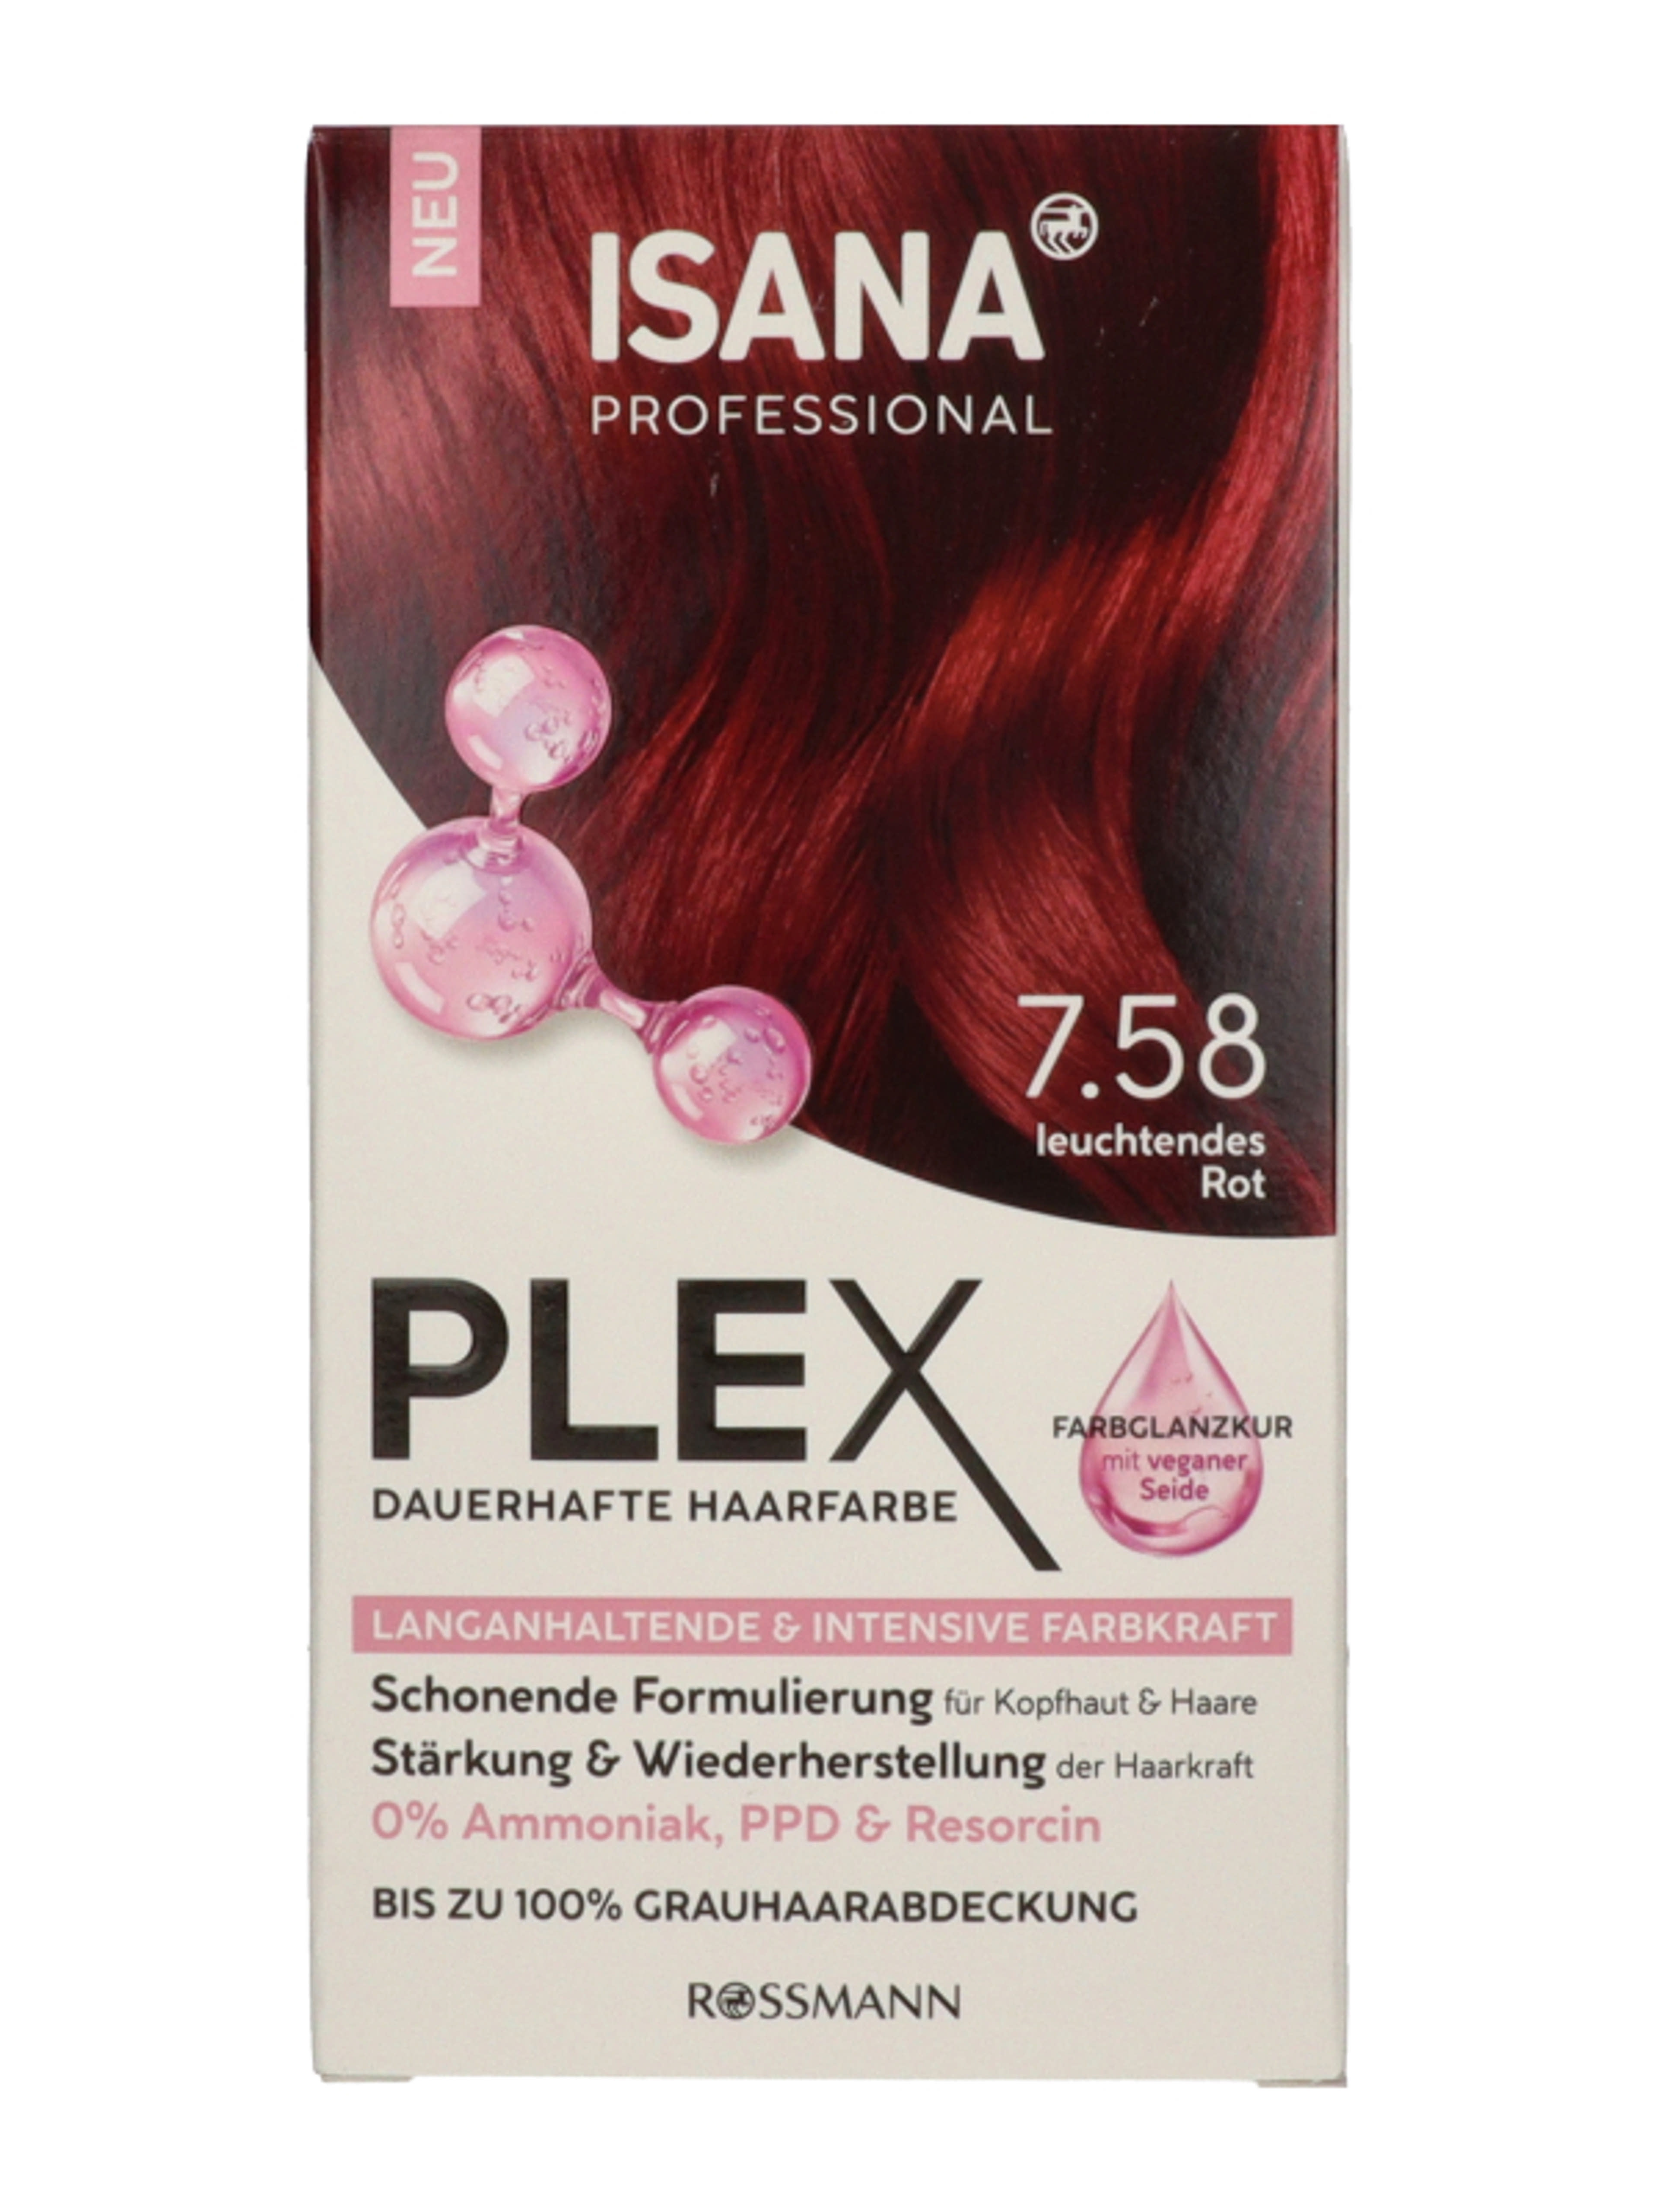 Isana Professional Plex hajfesték /7.58 sötétbarna ragyogó vörös - 1 db